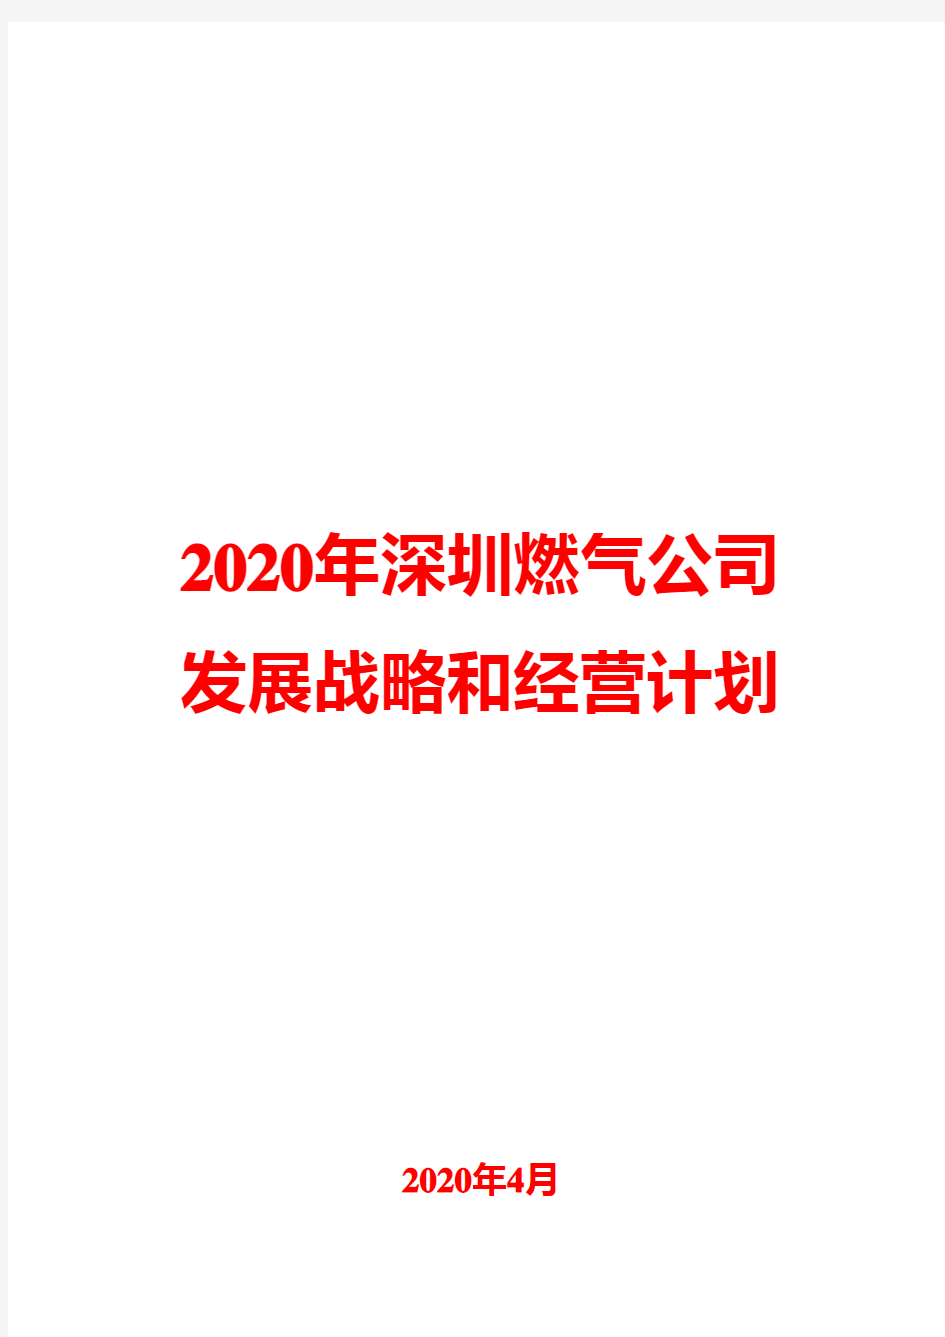 2020年深圳燃气公司发展战略和经营计划